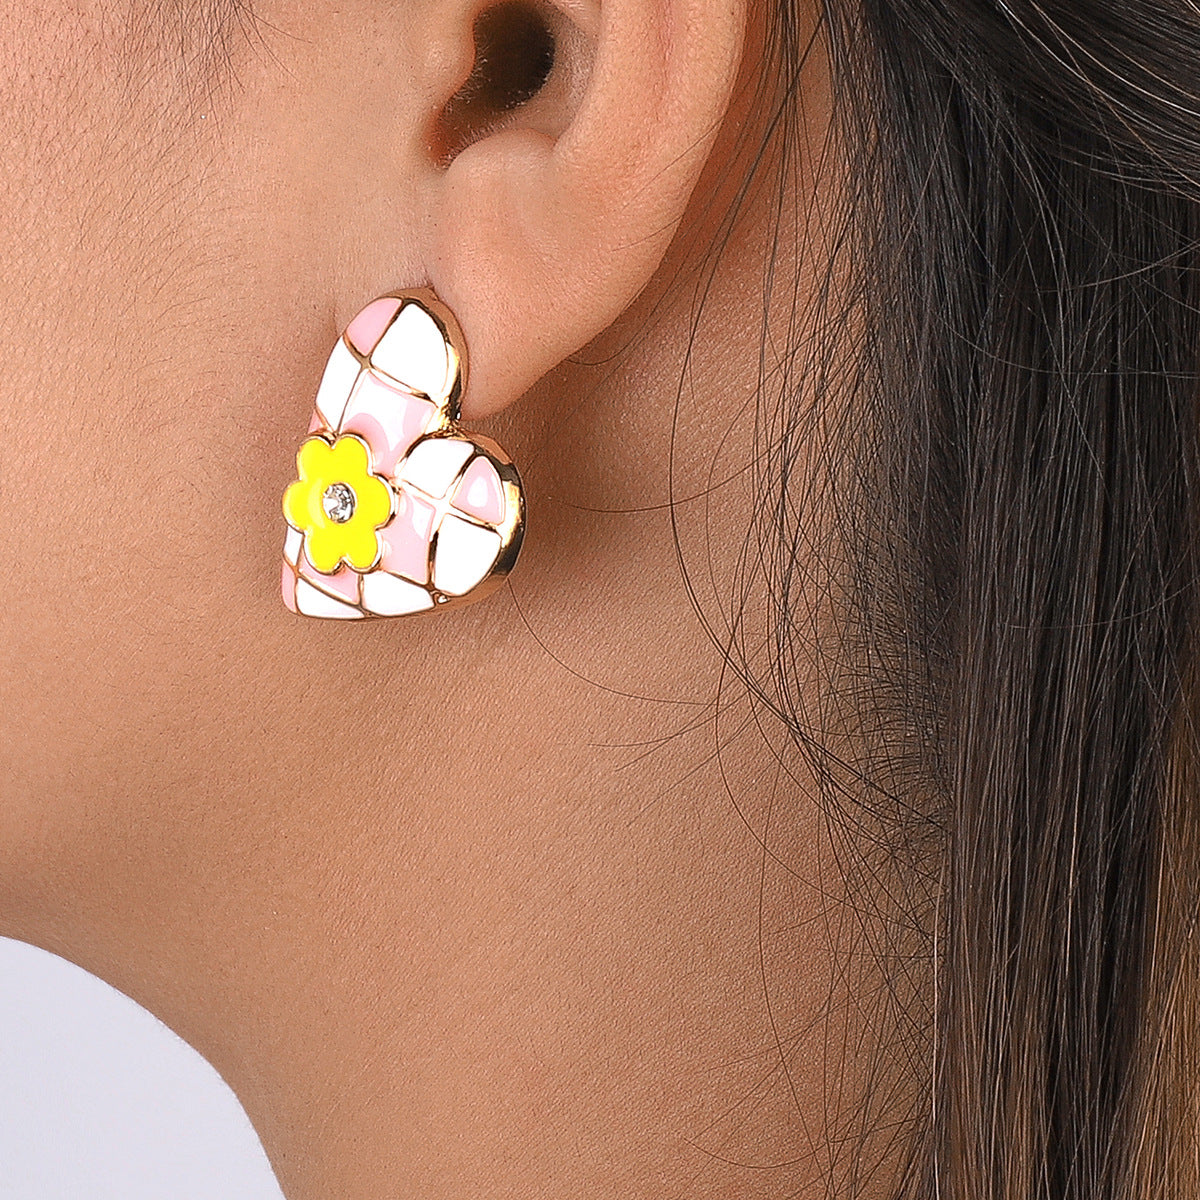 Clear Cubic Zirconia & Pink Flower Heart Stud Earrings